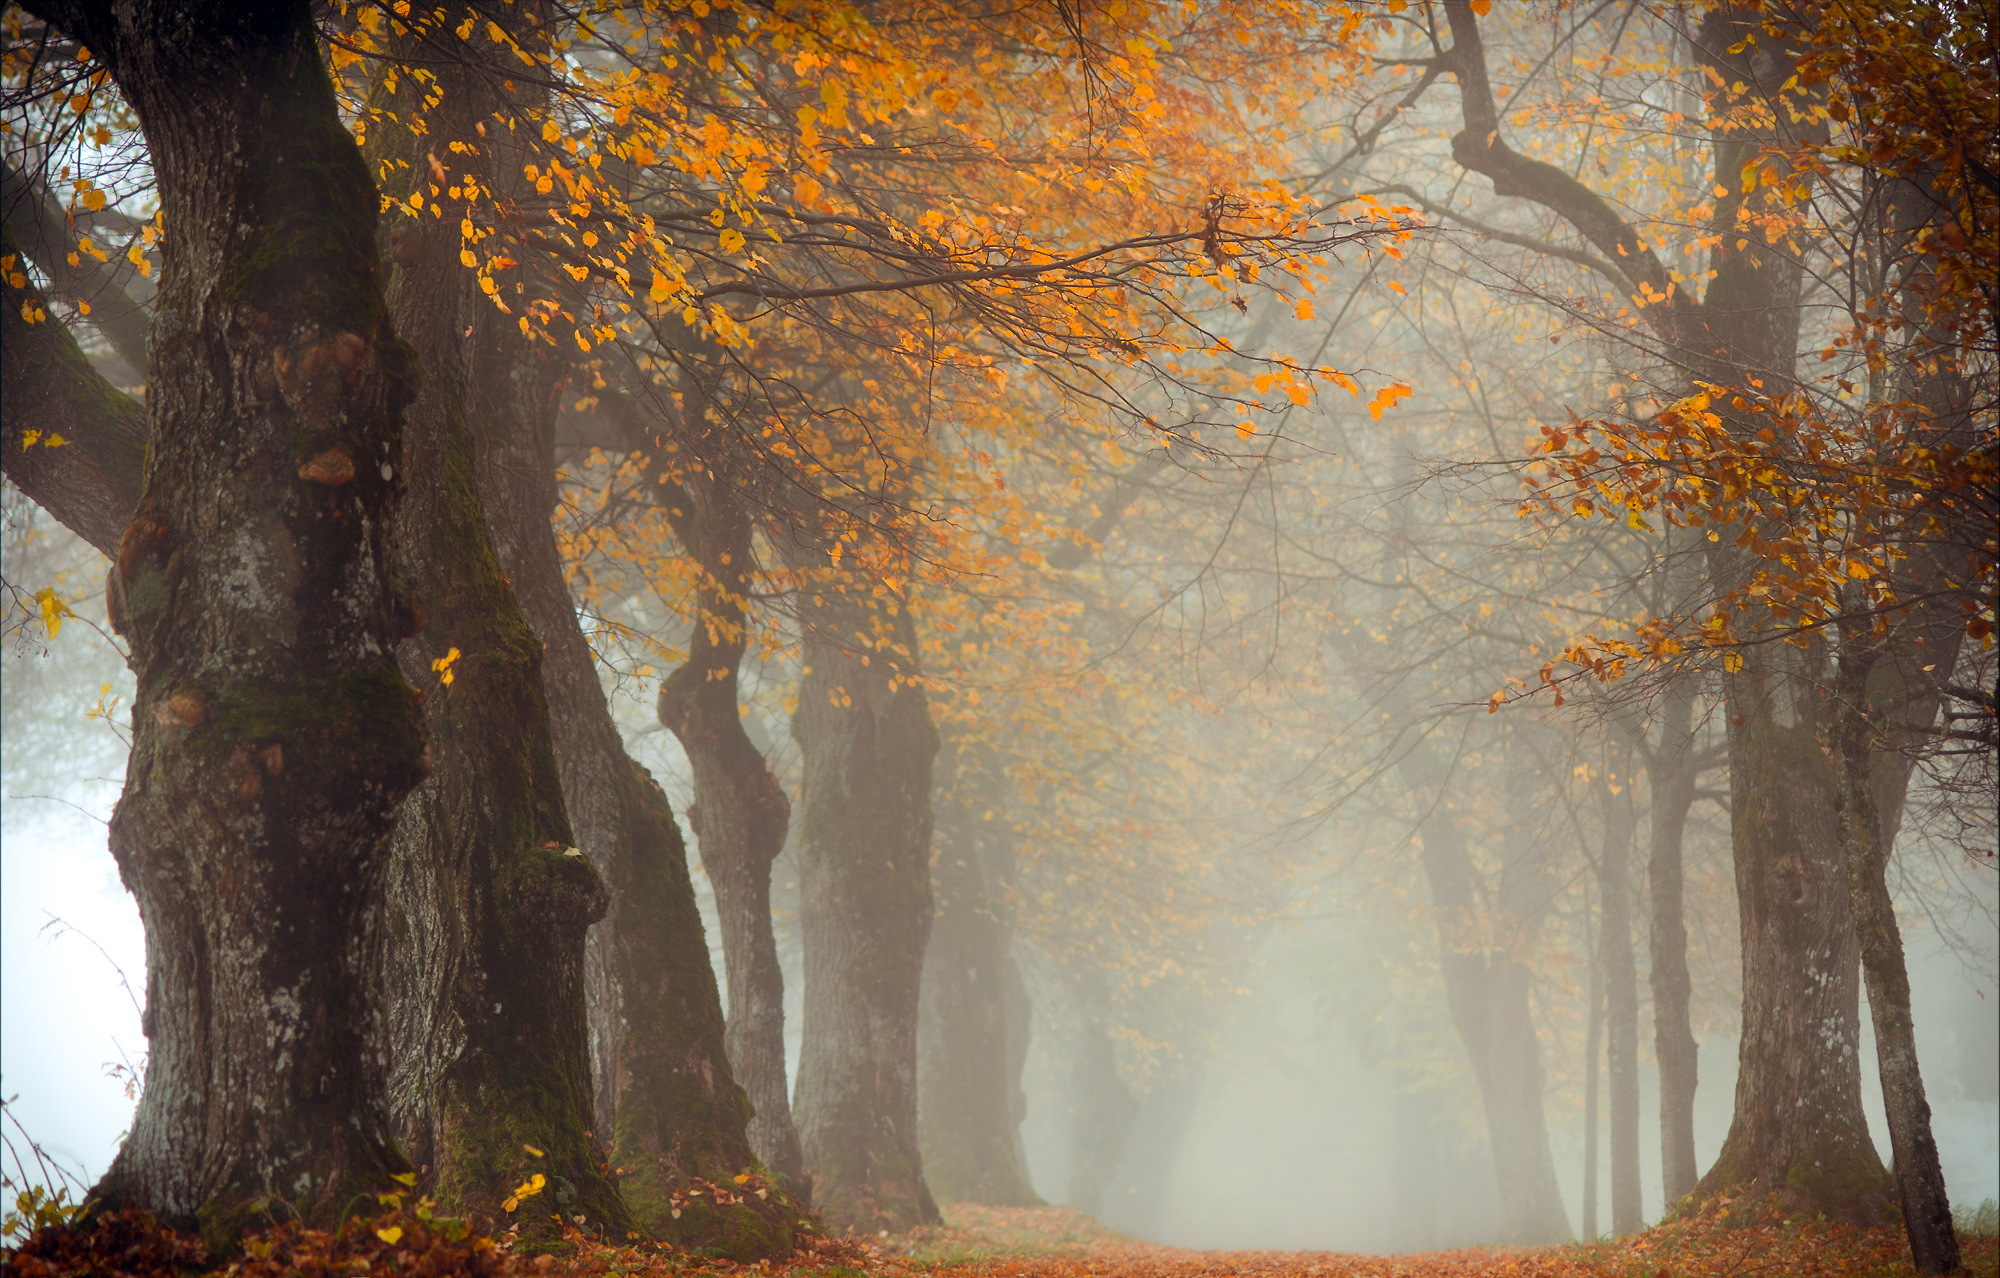 Скачать картинку Природа, Осень, Дорога, Дерево, Туман, Земля/природа, Обсаженный Деревьями в телефон бесплатно.